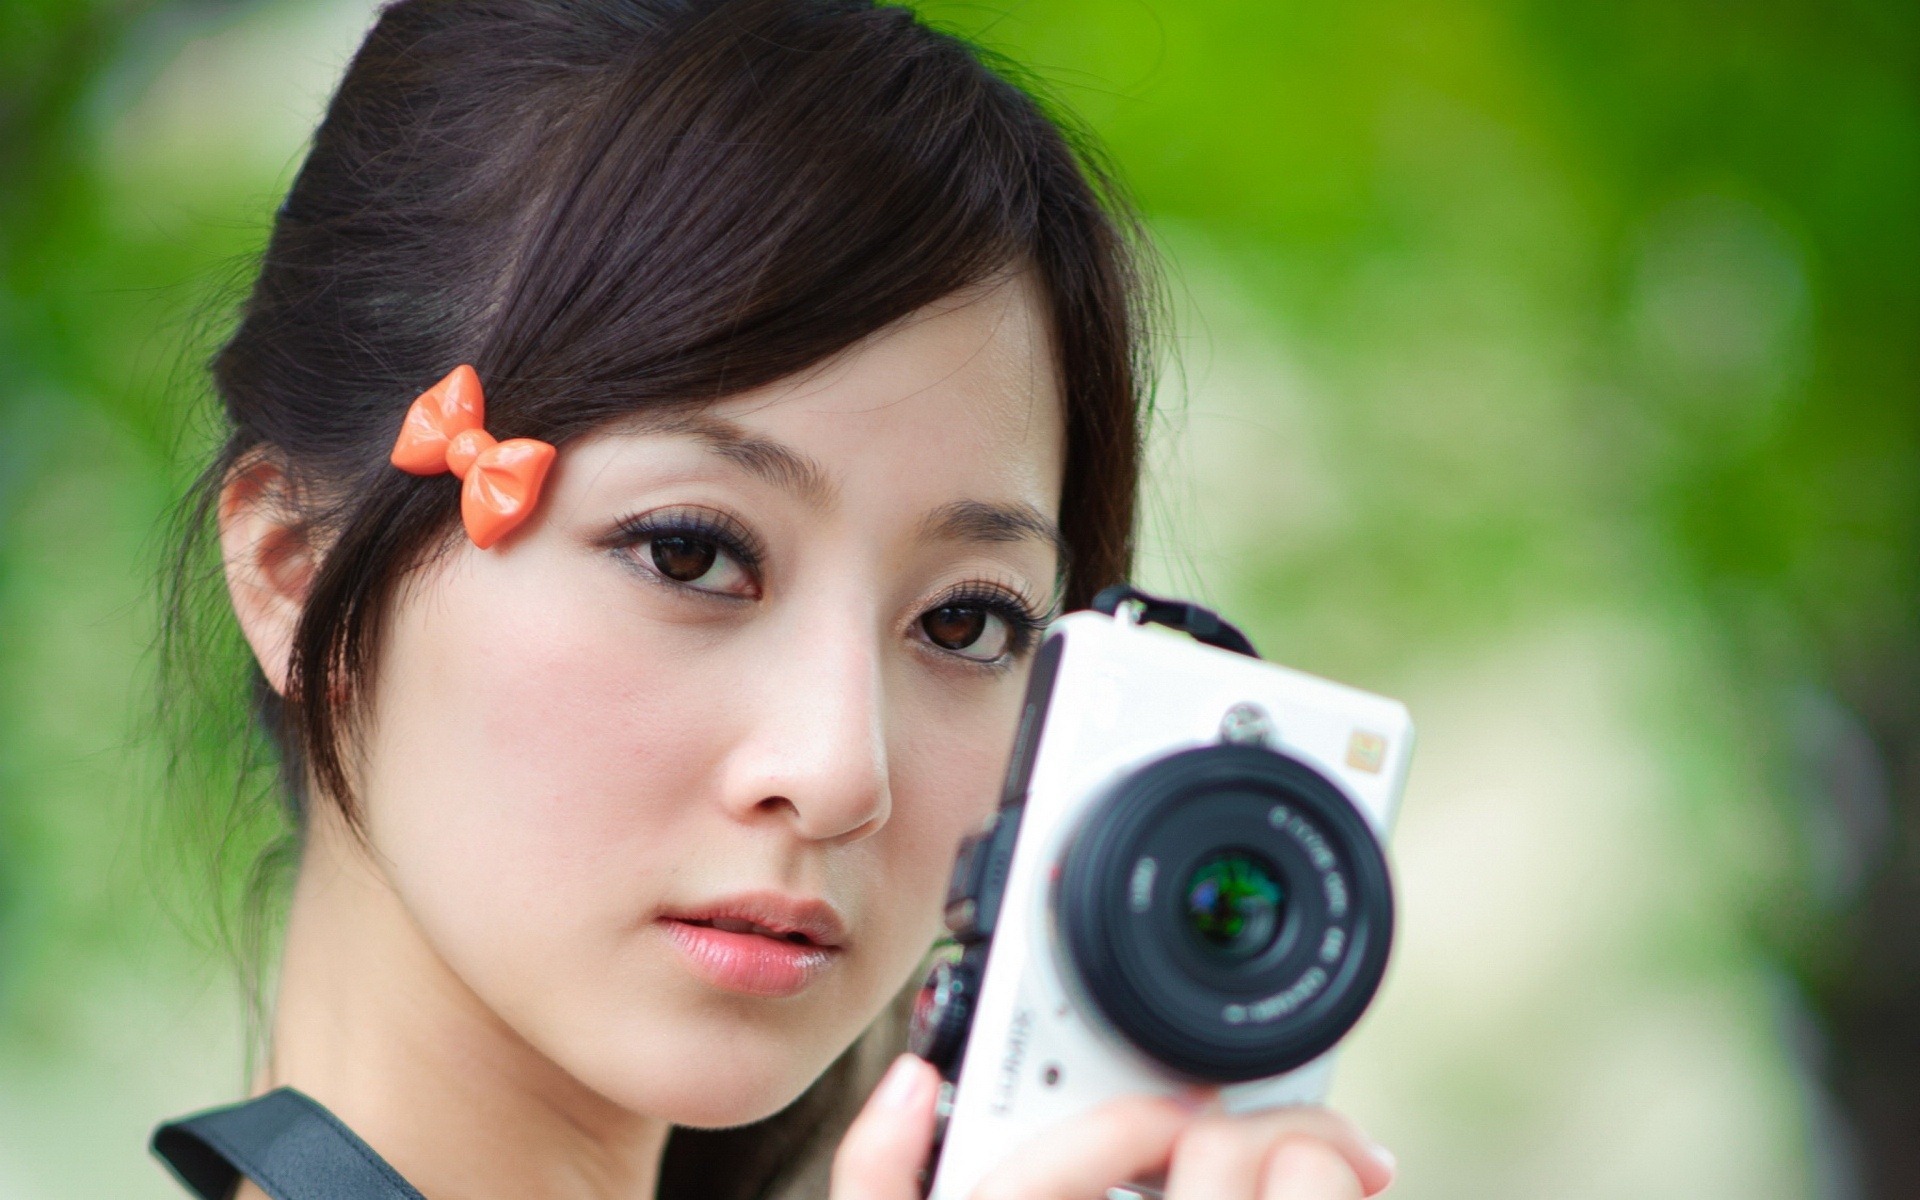 Descarga gratuita de fondo de pantalla para móvil de Mujeres, Mikako Zhang Kaijie.